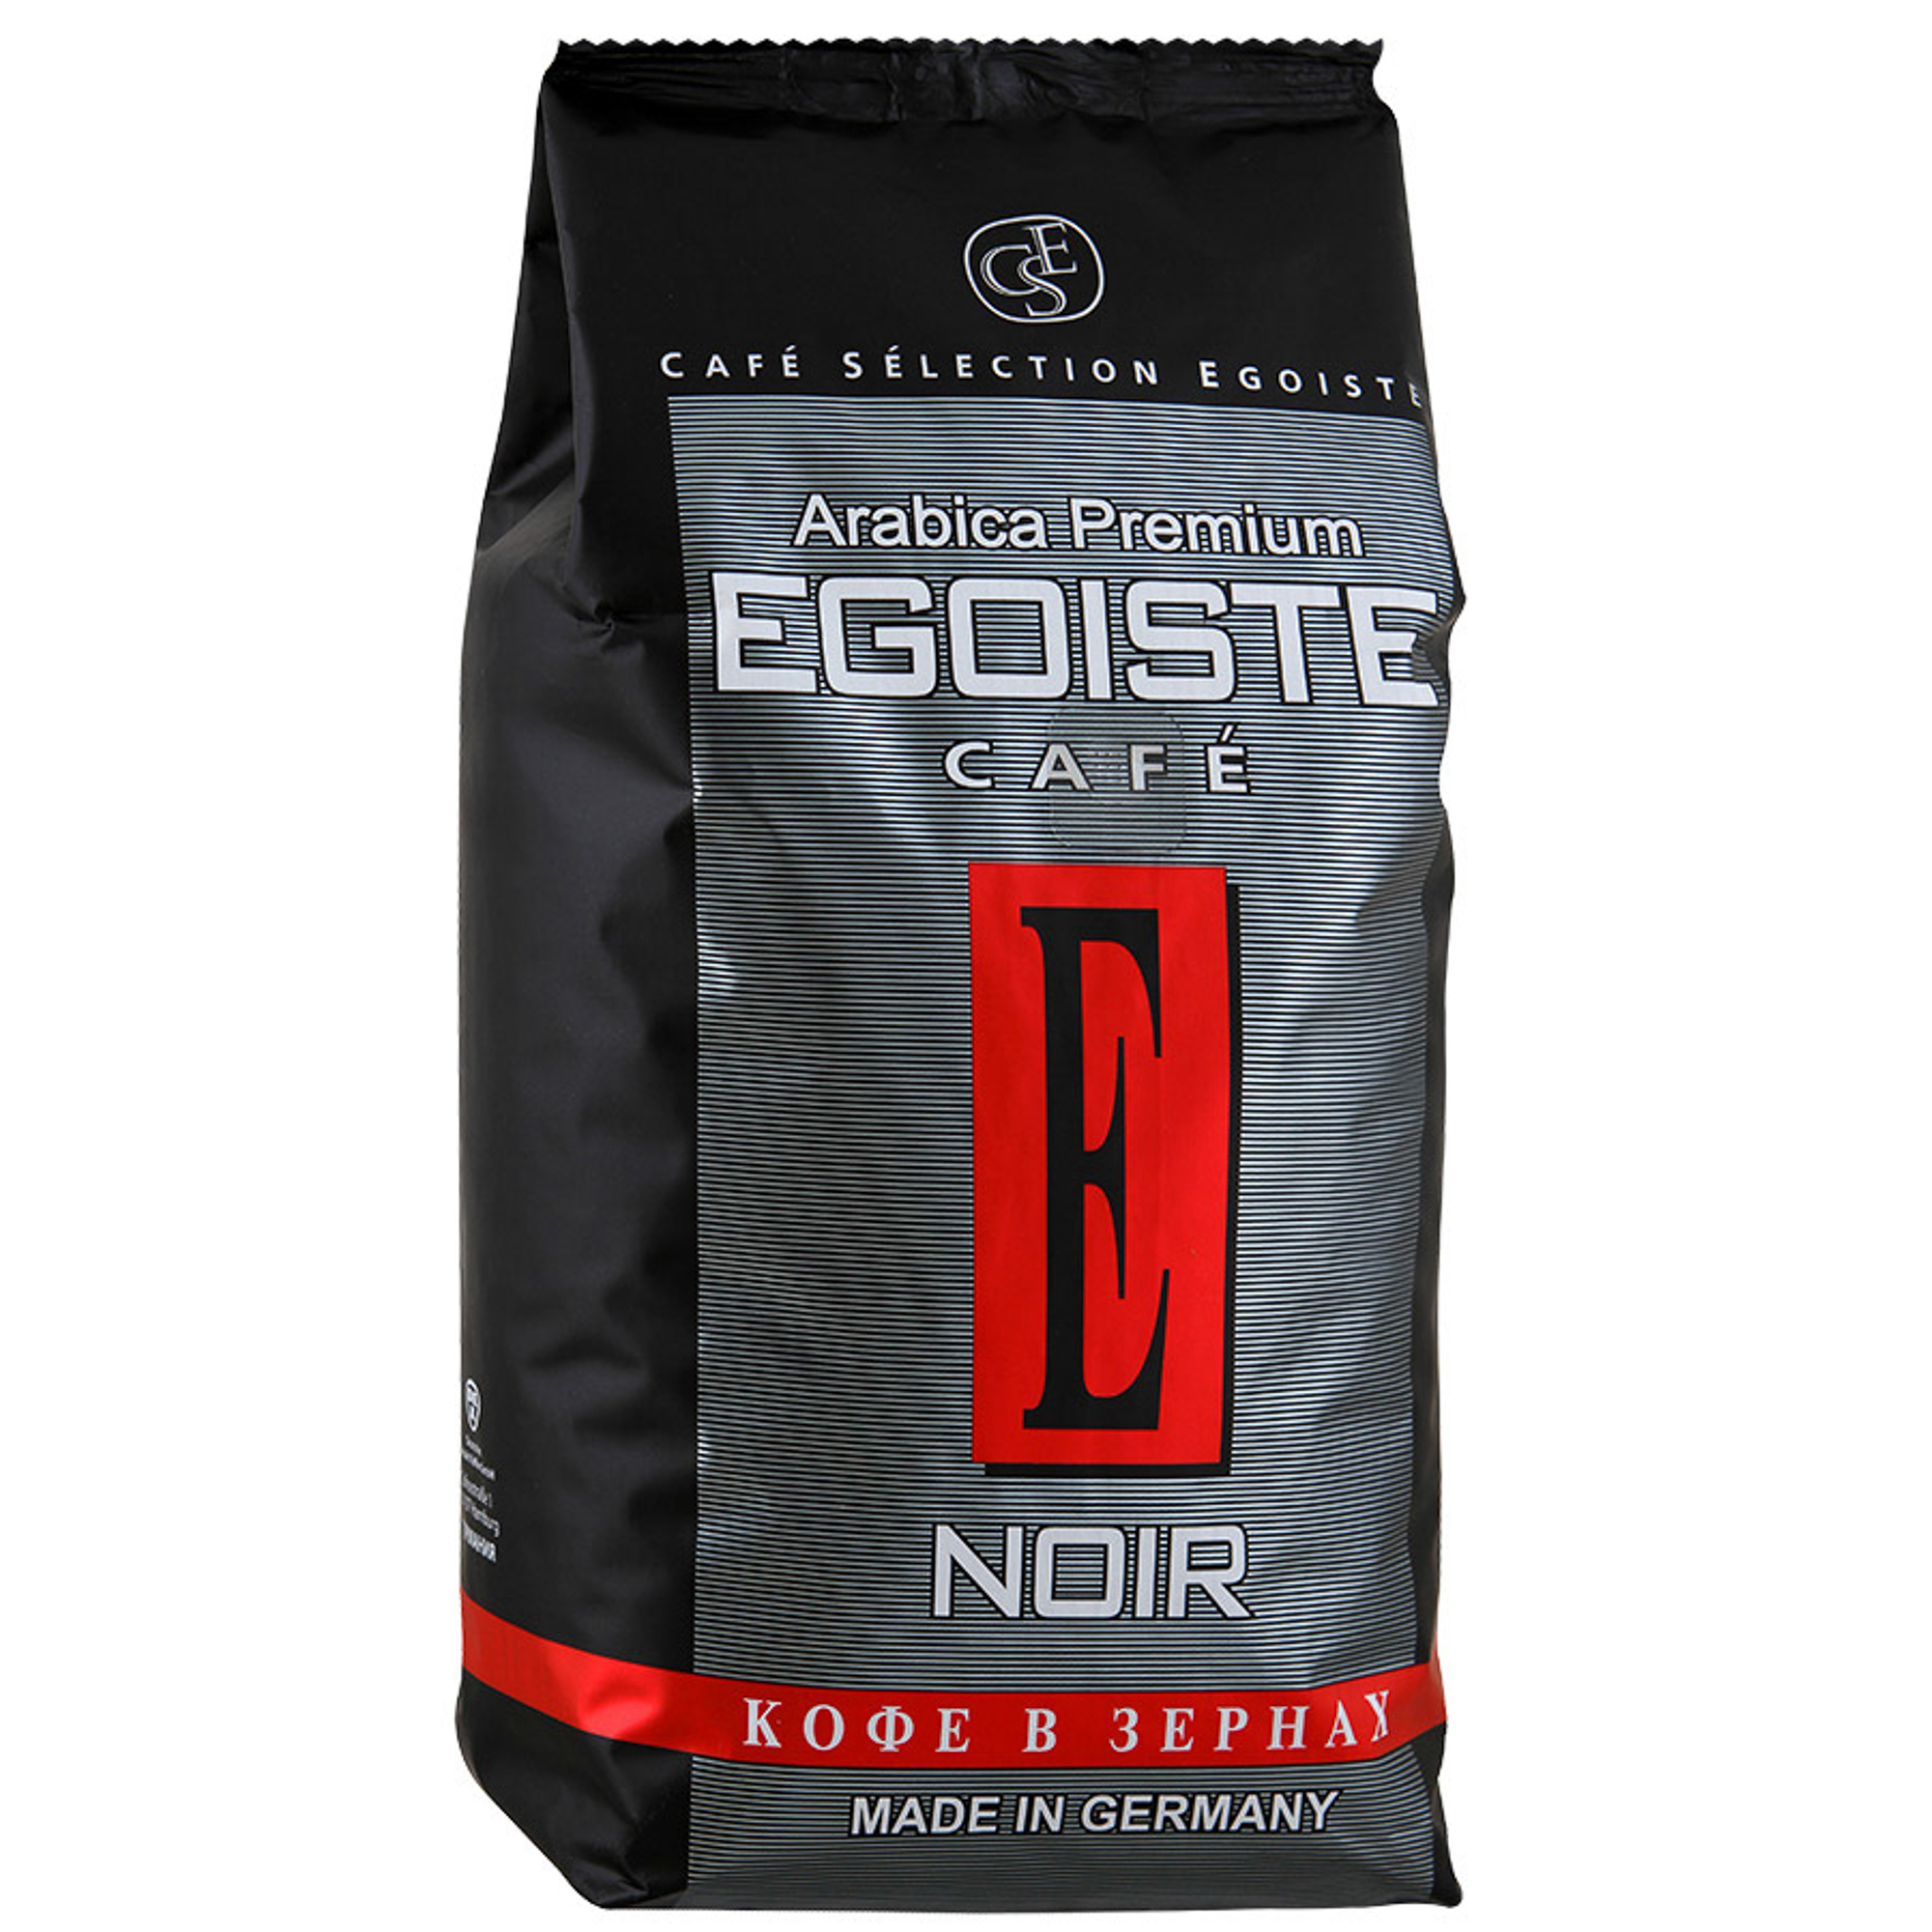 Кофе в зернах Egoiste Noir 1 кг кофе egoiste noir зерно в у 250гр